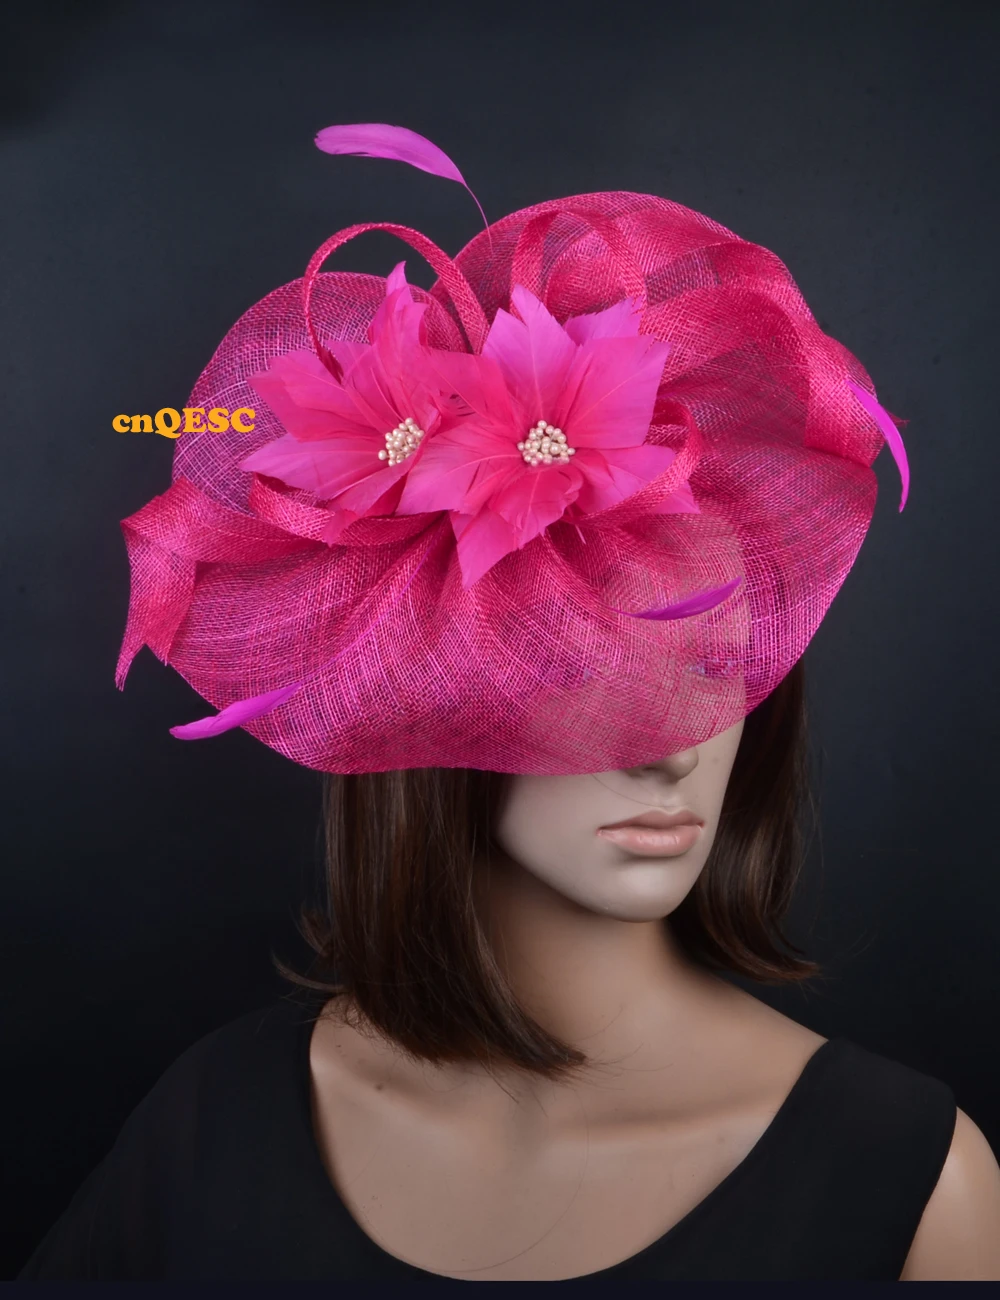 Ярко-розовый большой головной убор Sinamay женская шляпа перо чародей для свадебных вечеринок гонки Кентукки Дерби ascot для посещения скачек, церкви